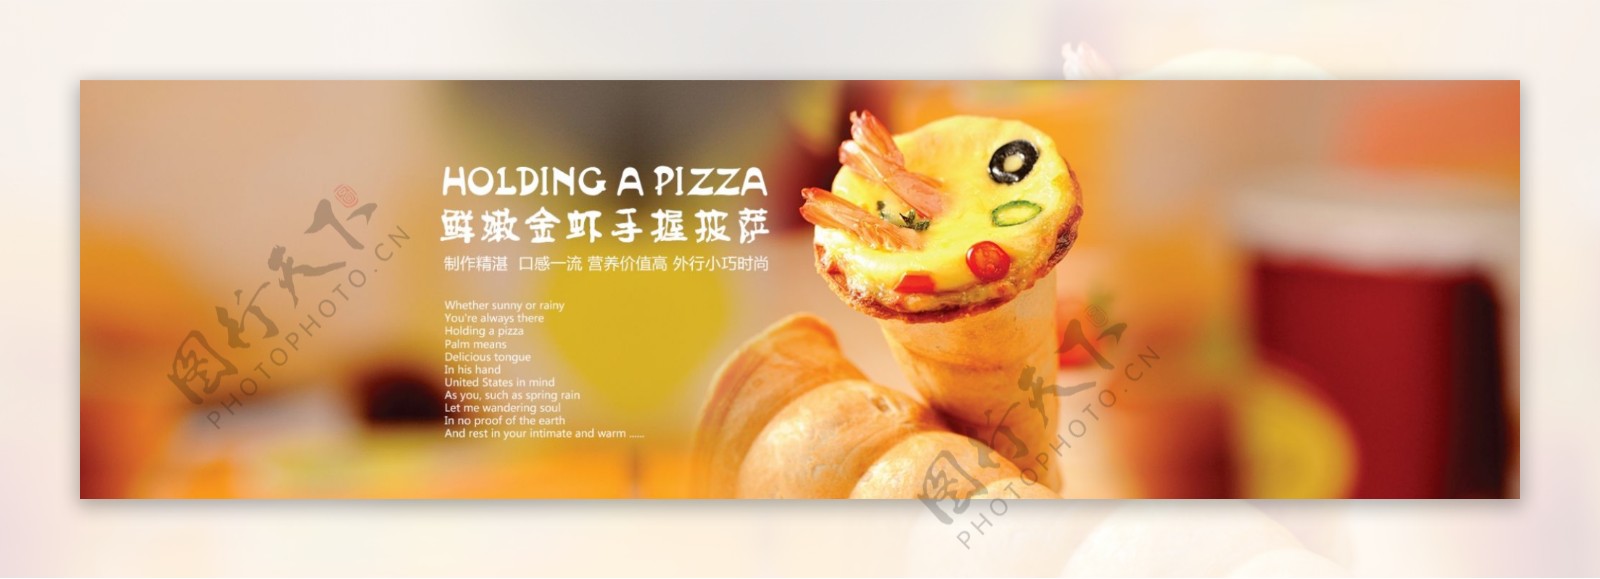 手握披萨宣传烘焙网页海报